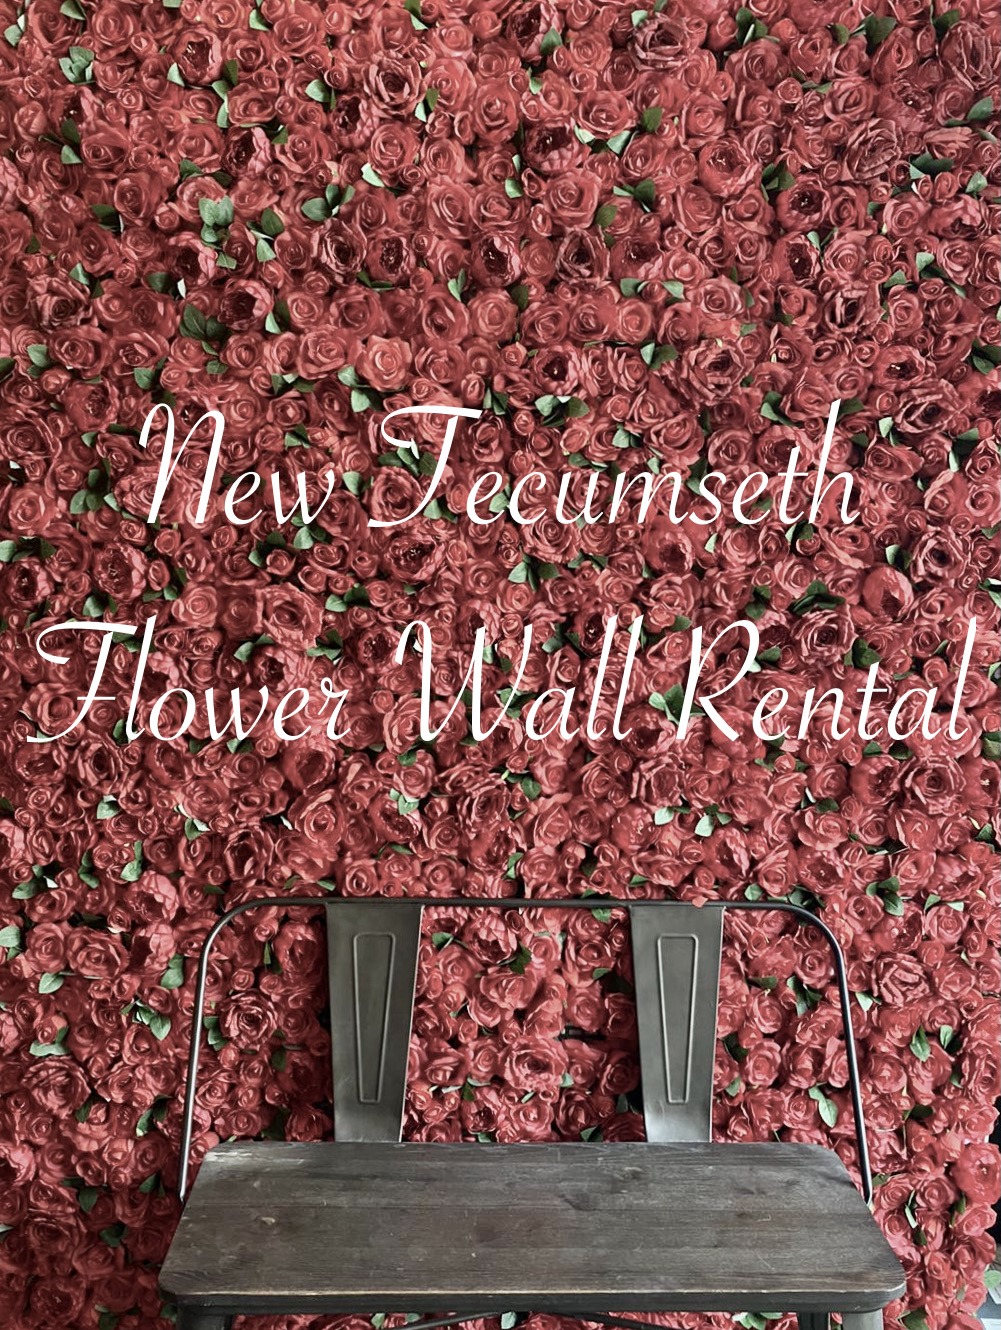 New Tecumseth Flower Wall Rental